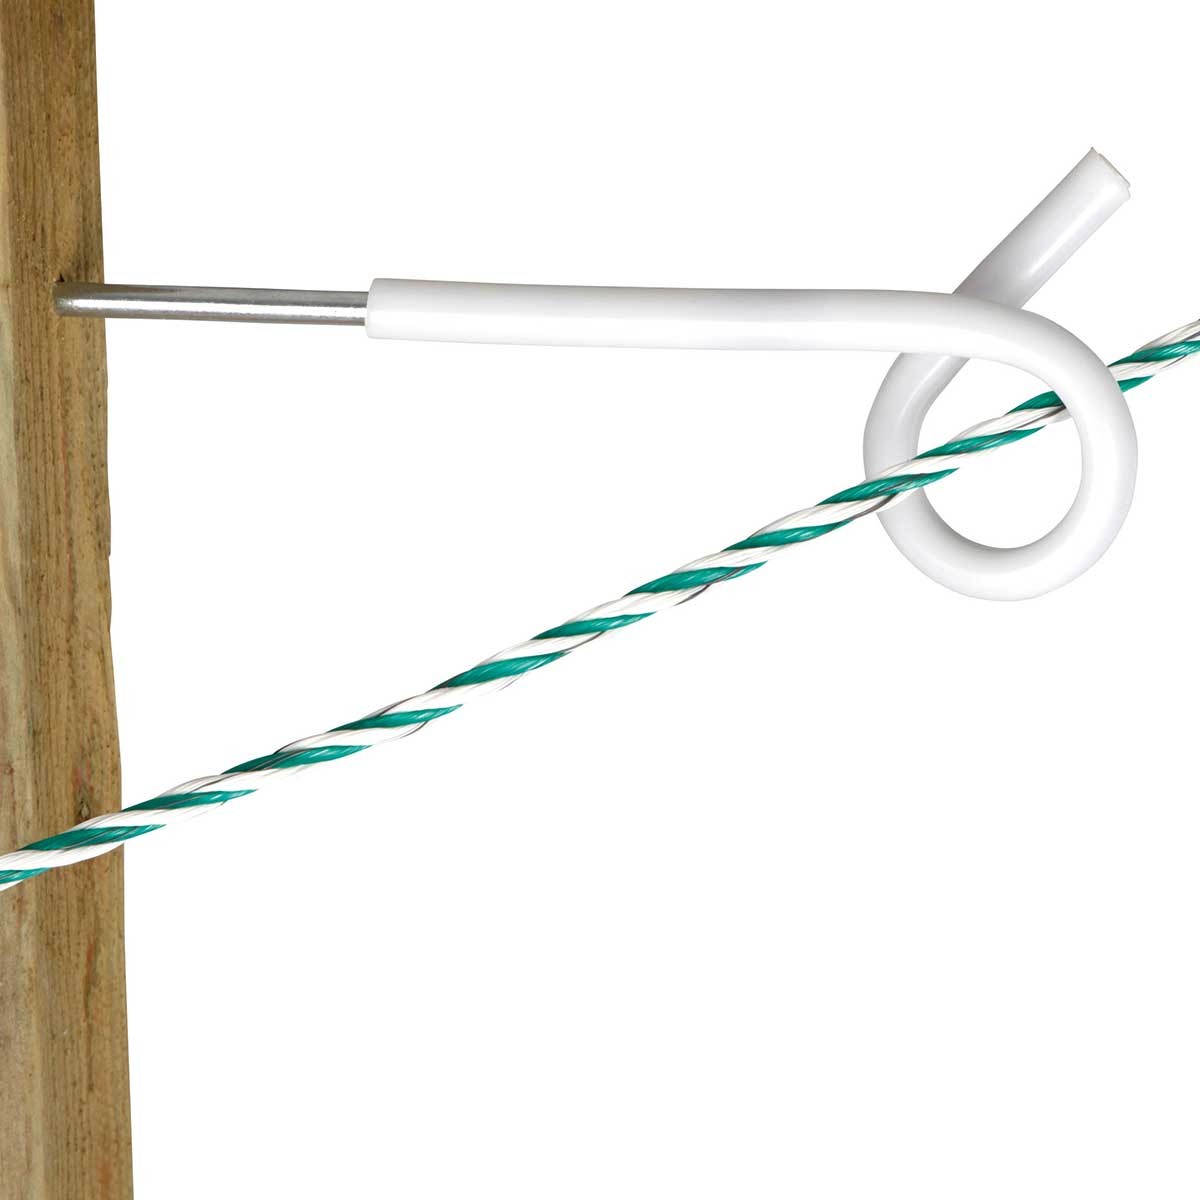 5x AKO isolatore a occhiello con gambo lungo per fili, corde e nastri